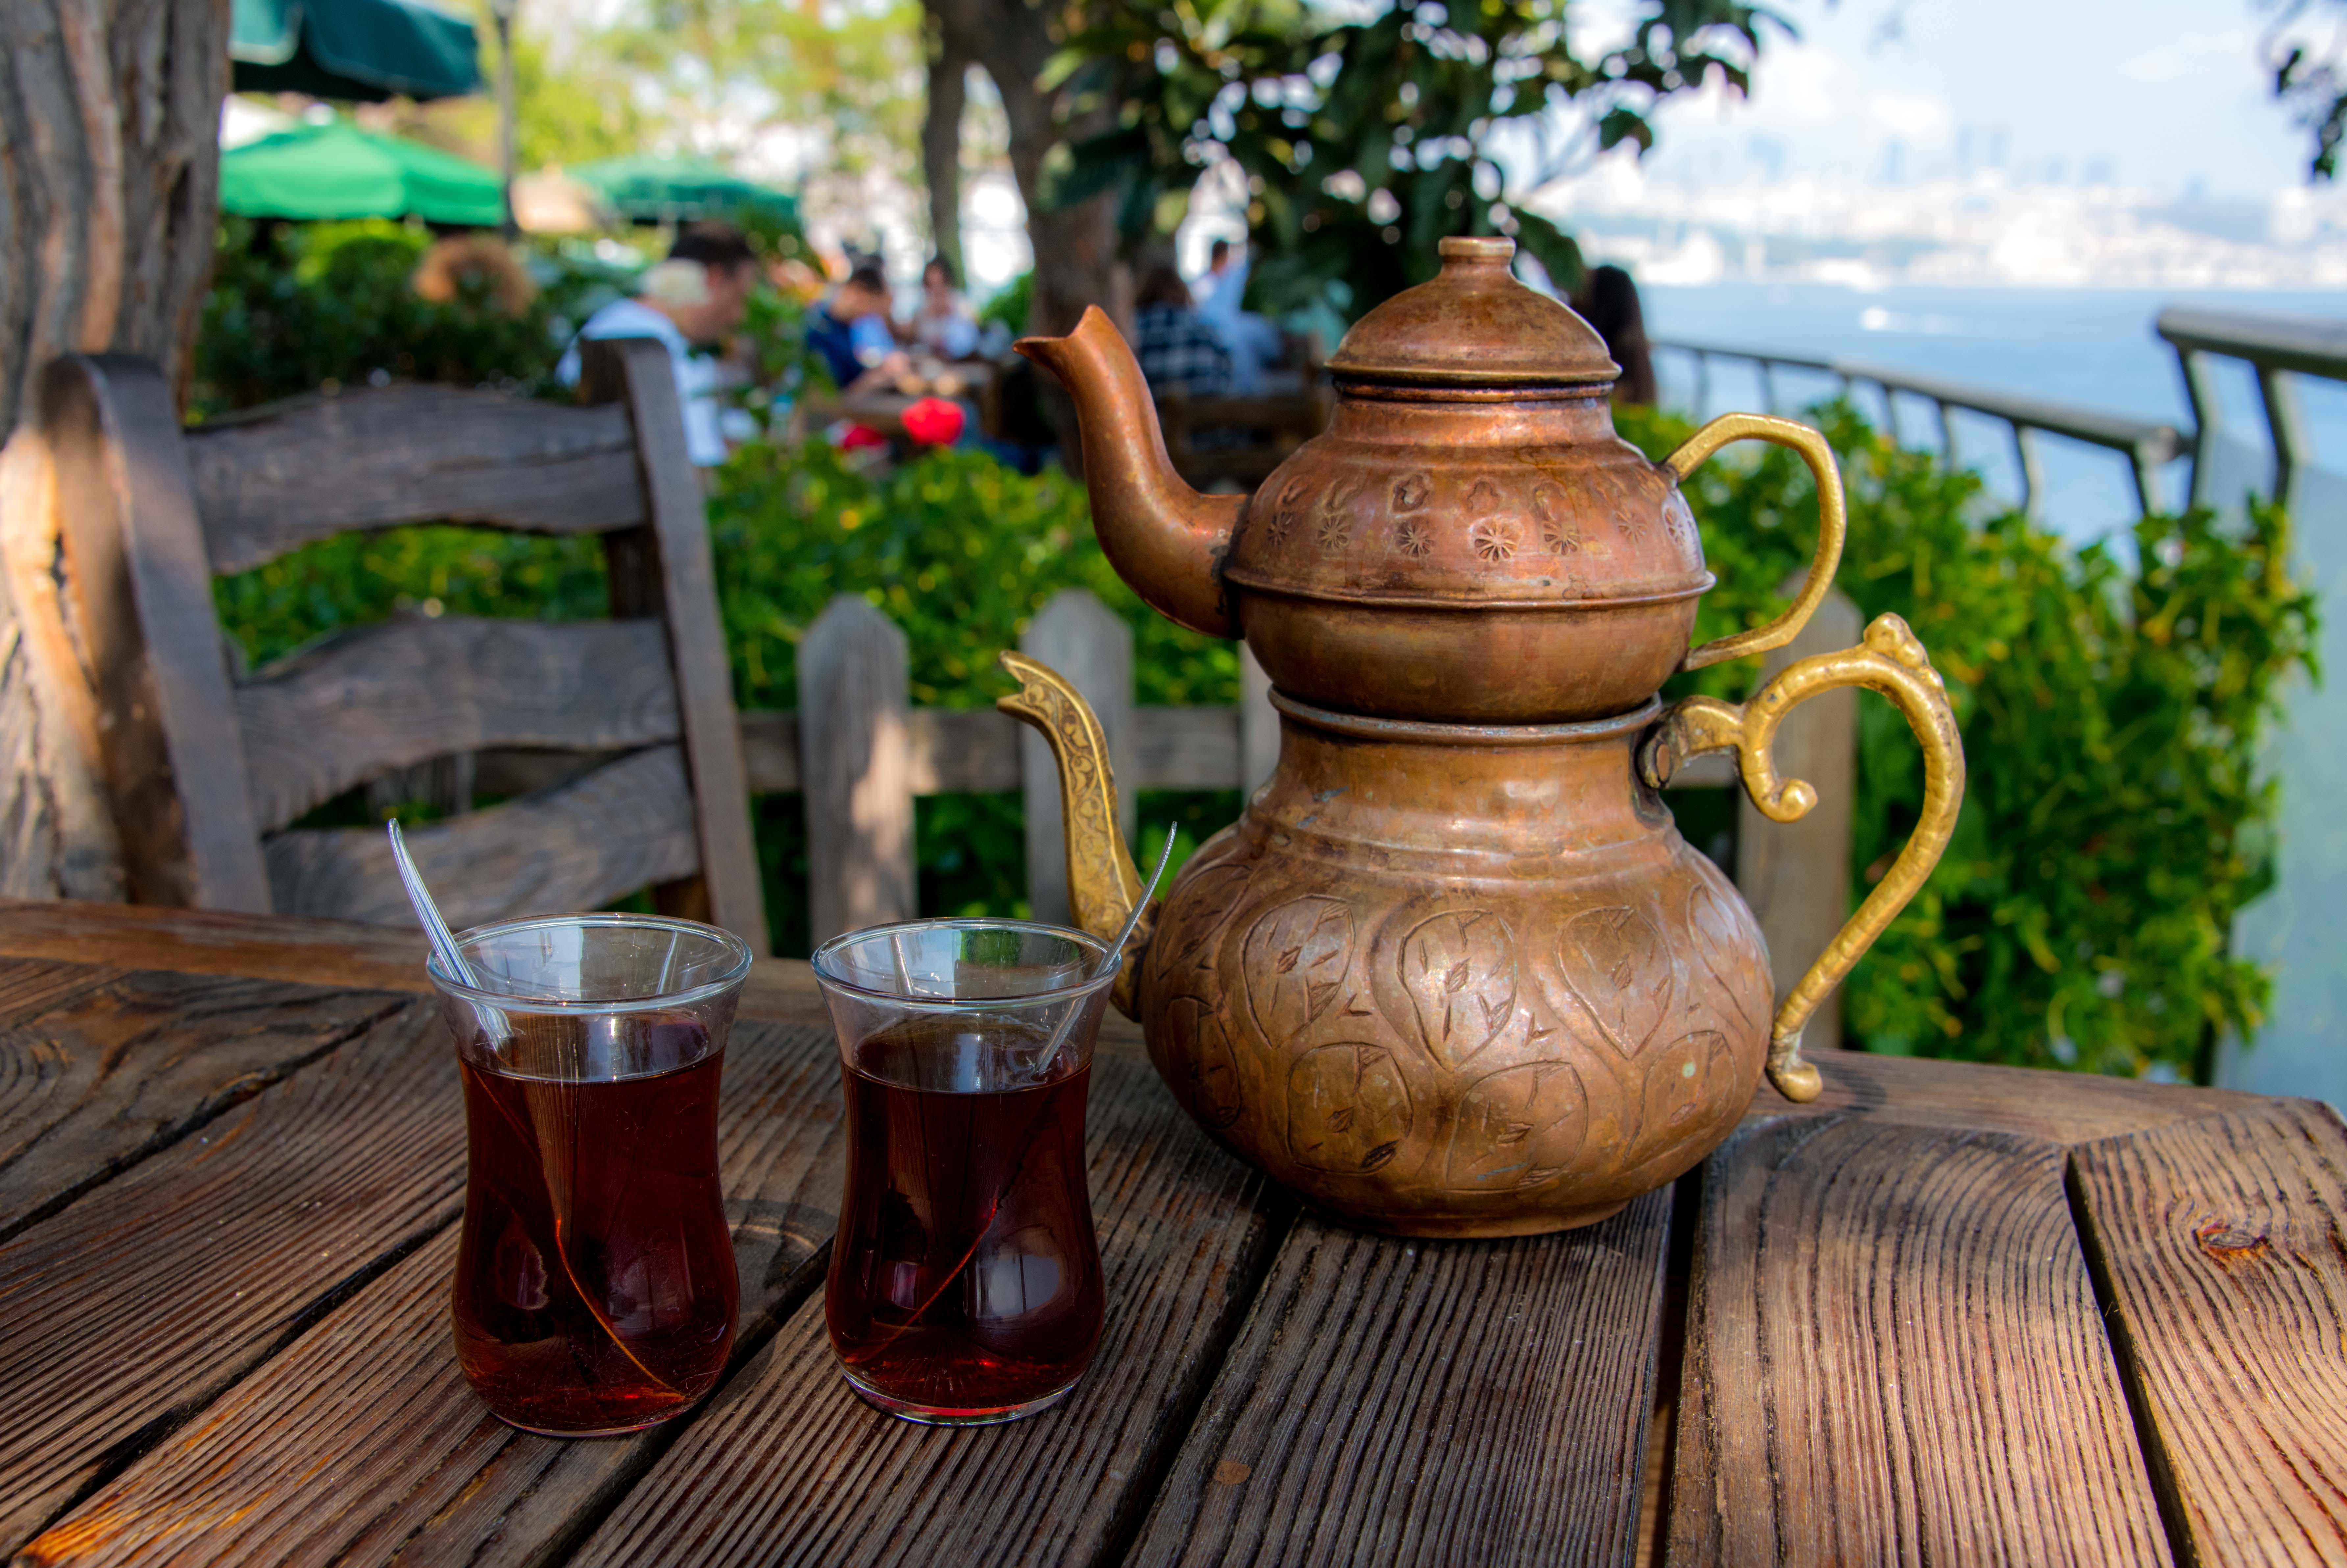 Турецкий чайник с чаем на столе